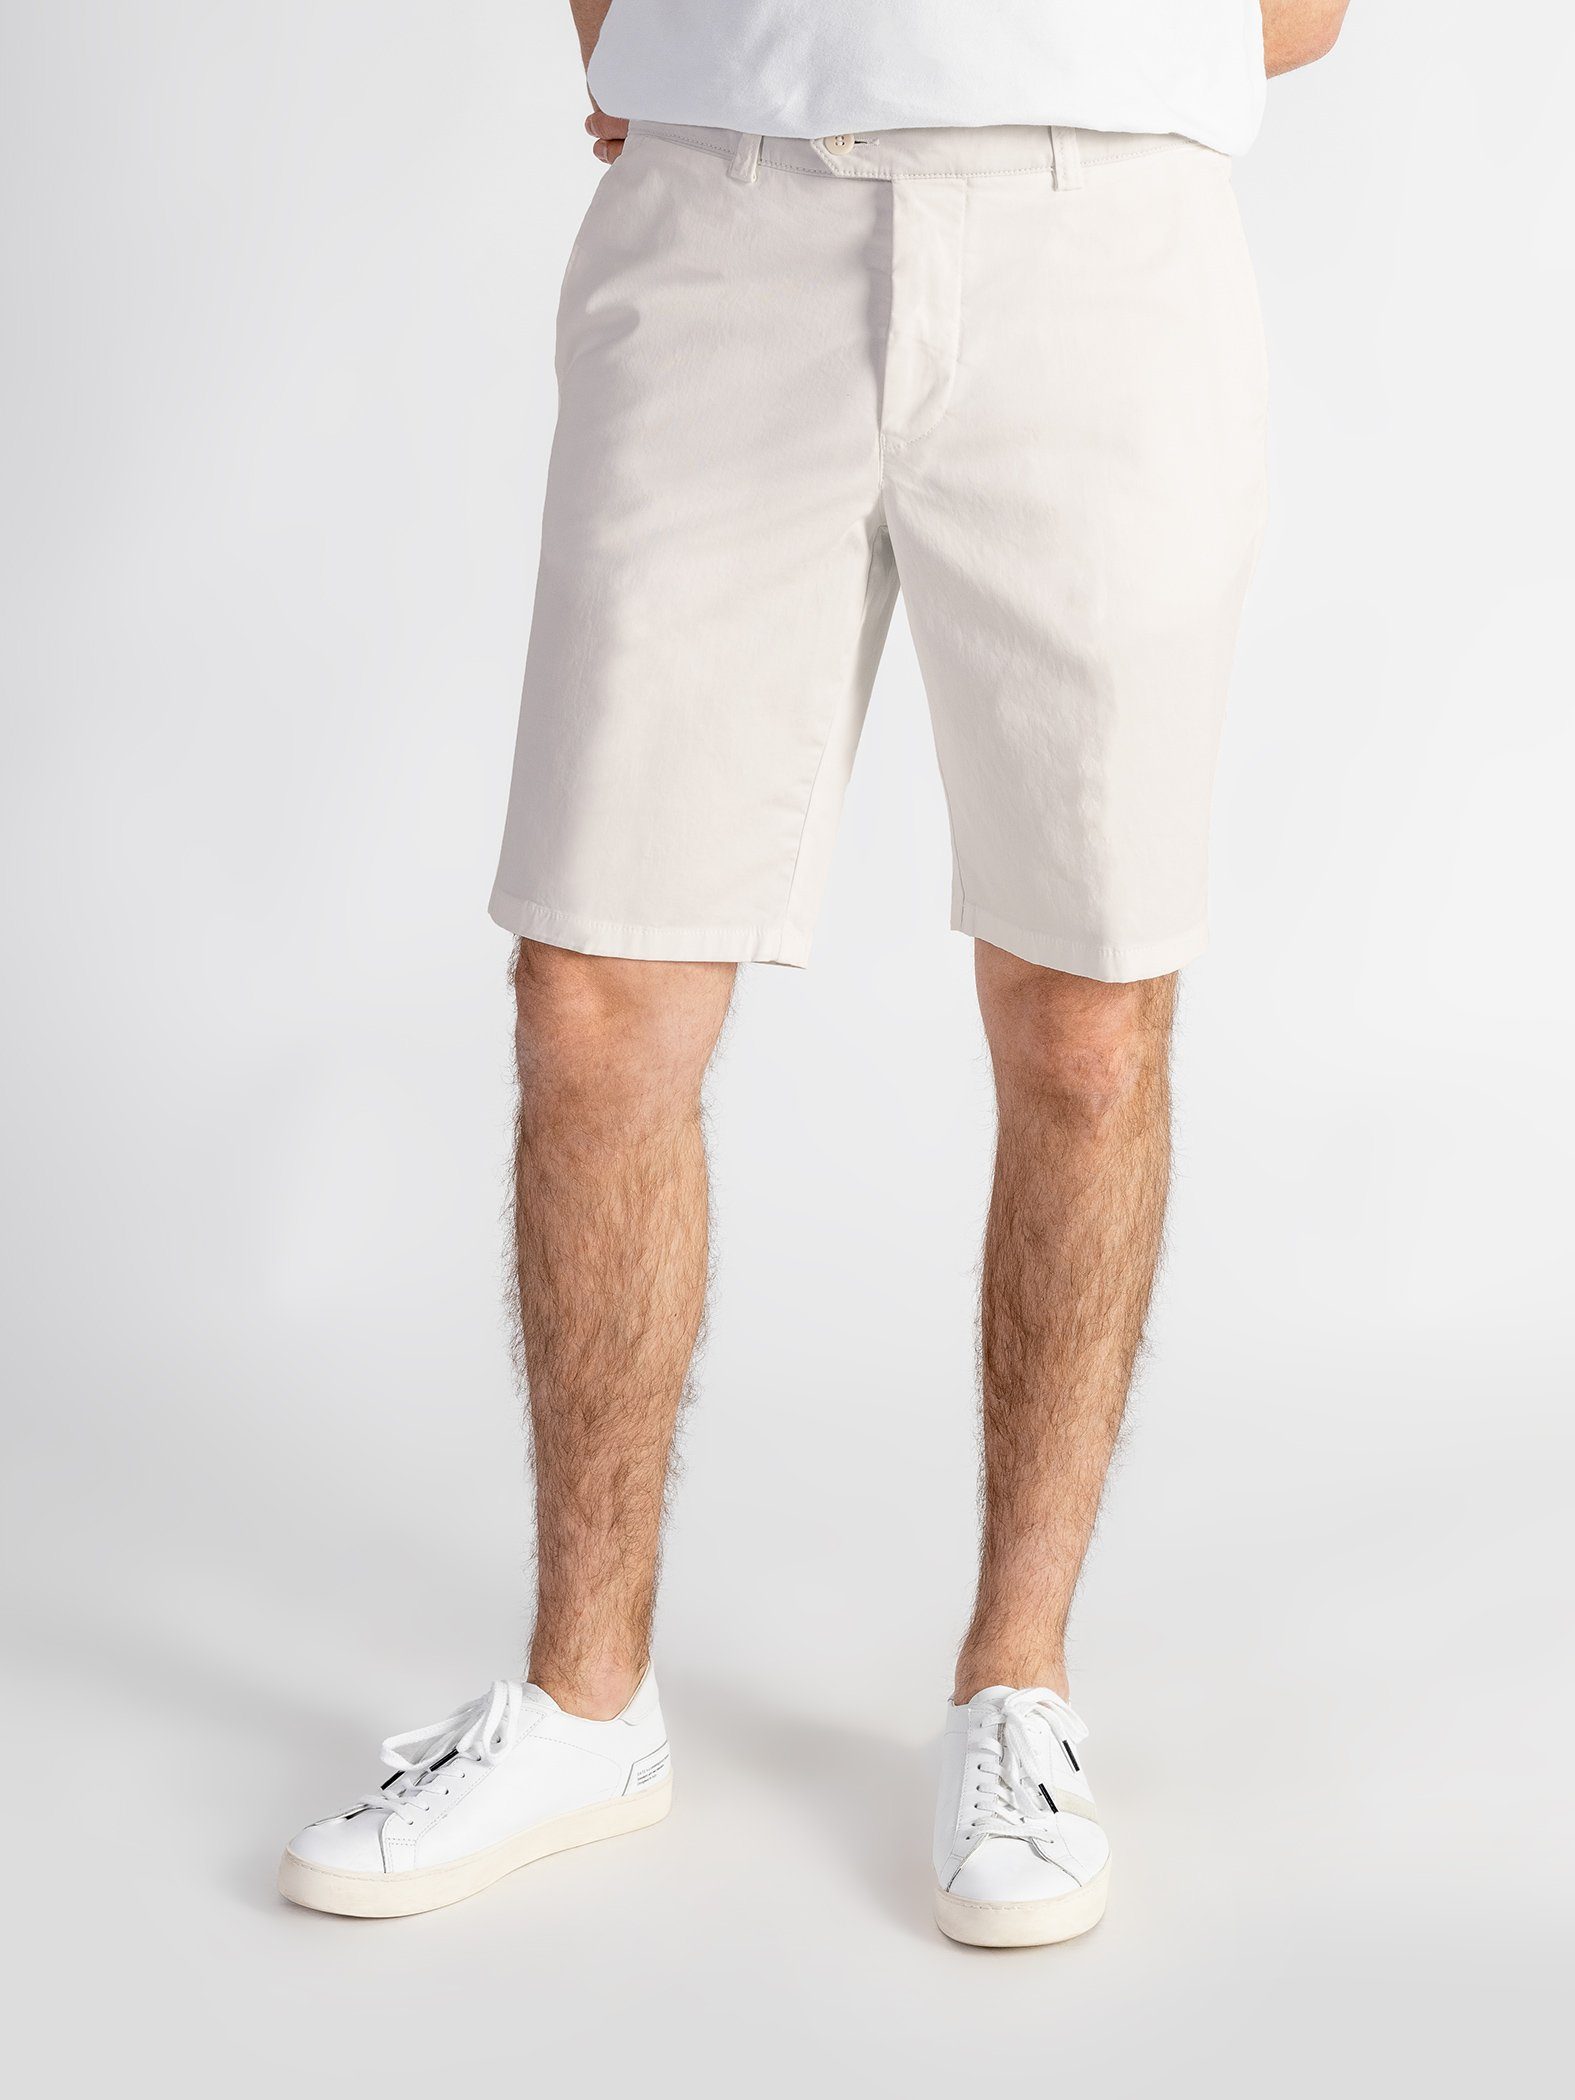 mit hellbeige Shorts Shorts TwoMates GOTS-zertifiziert Bund, elastischem Farbauswahl,